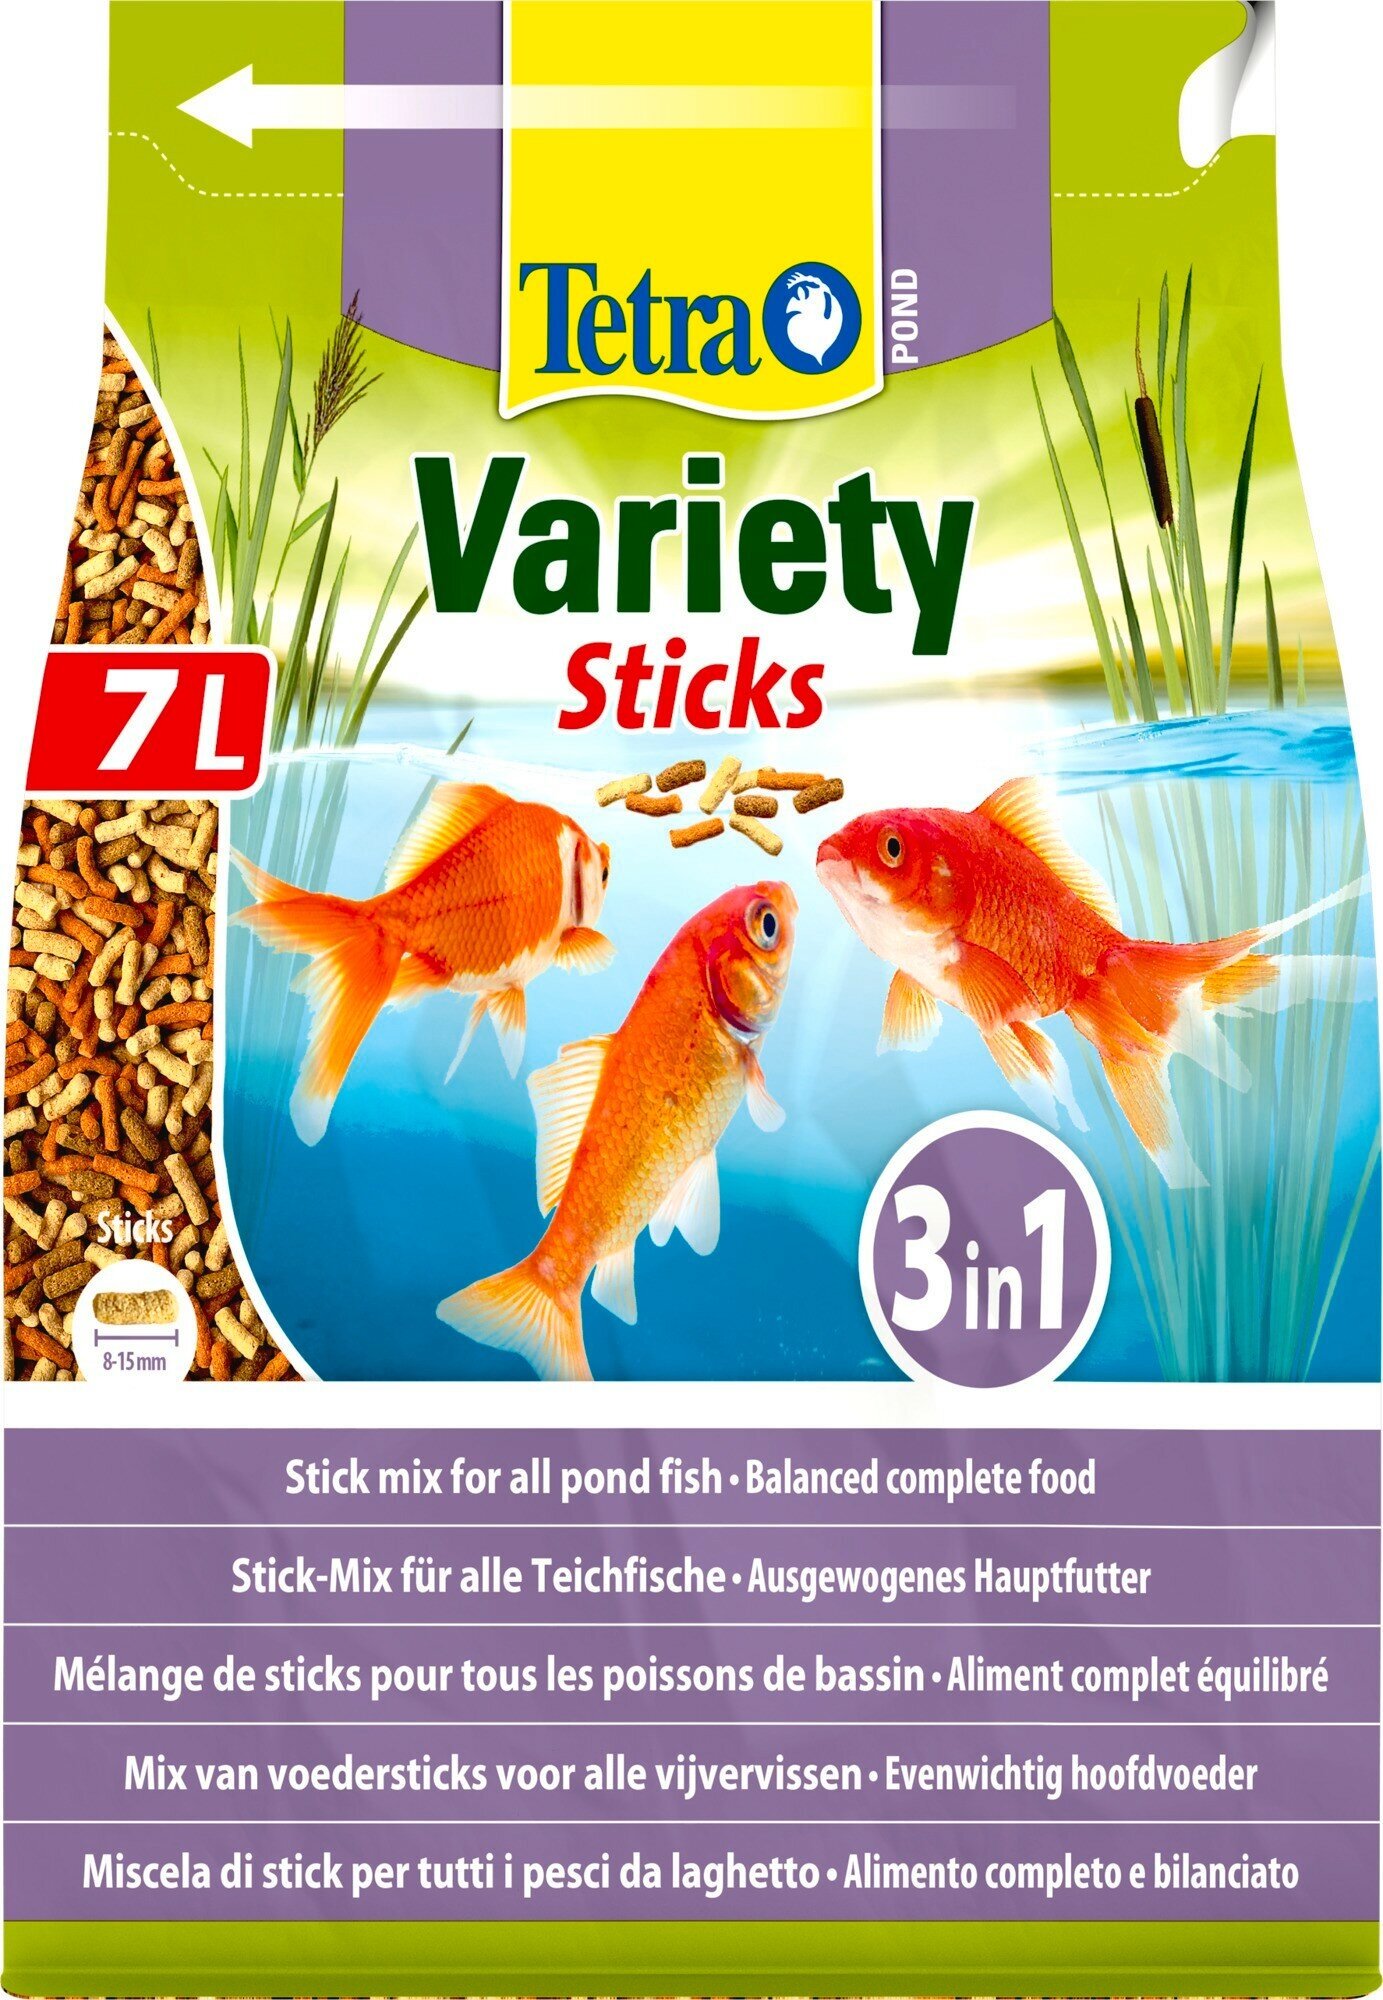 Корм Tetra Pond Variety Sticks 7 л, смесь из 3-х видов палочек для всех видов прудовых рыб